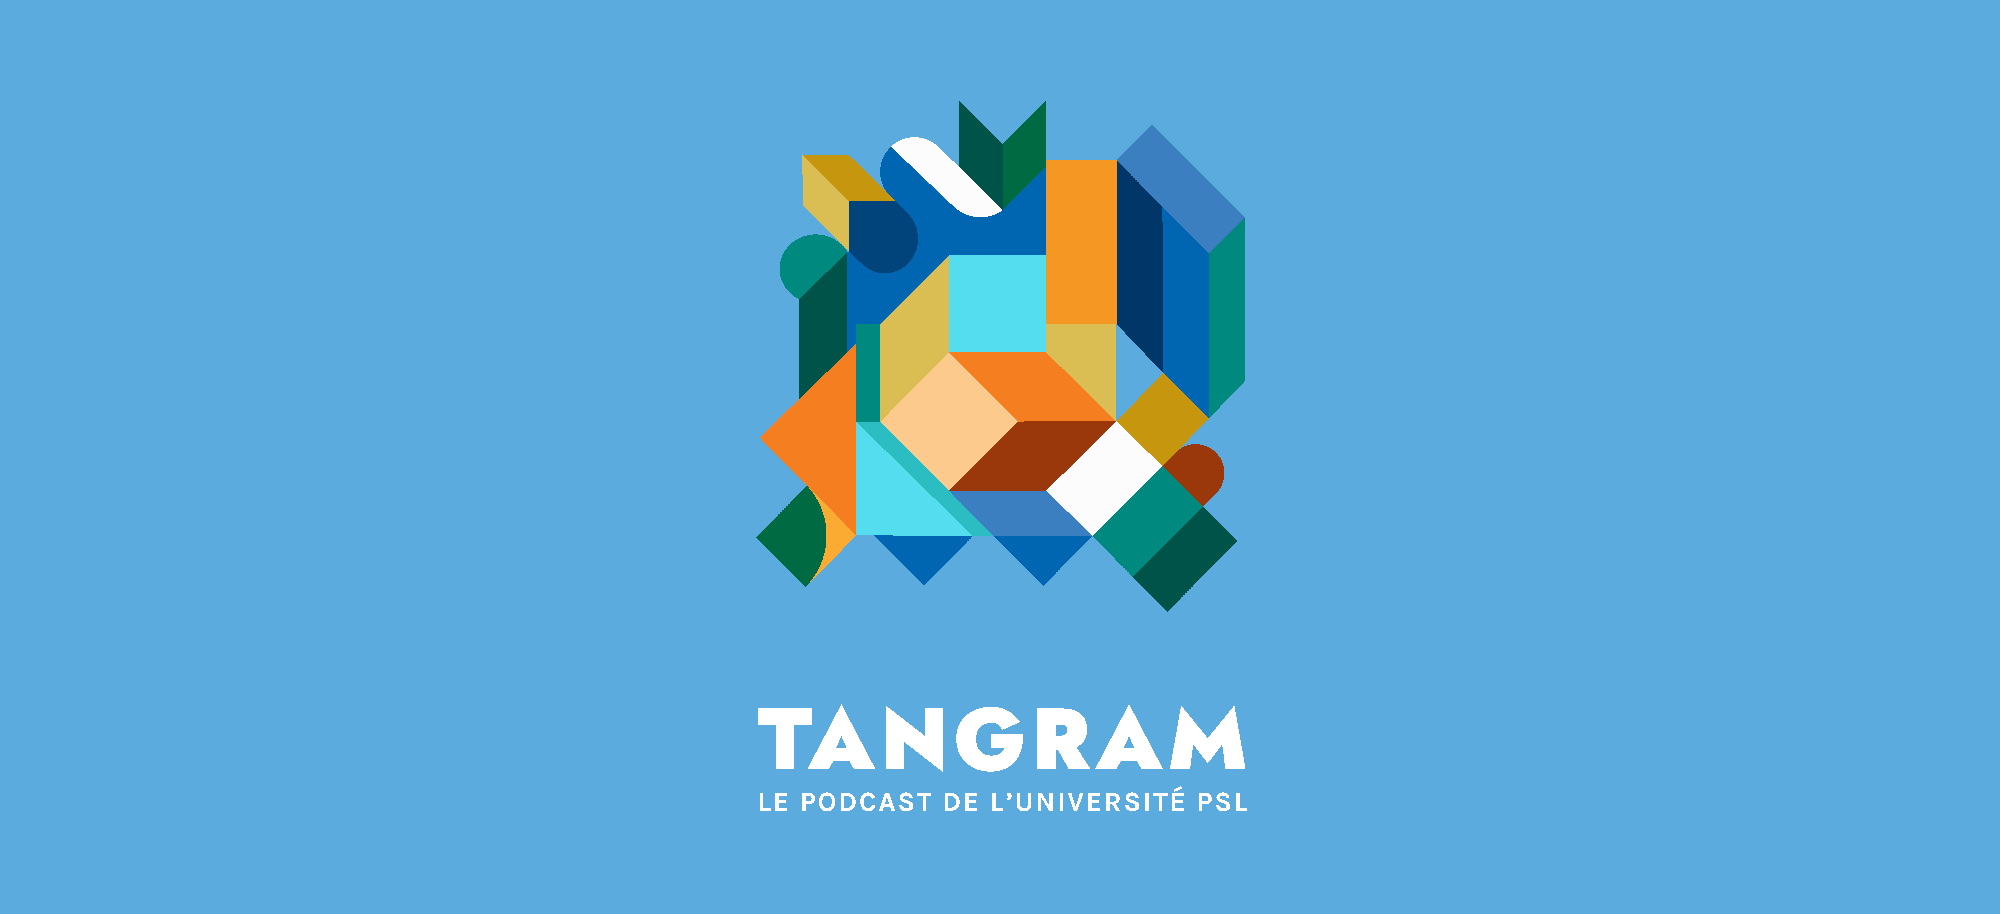 Tangram-podcast PSL